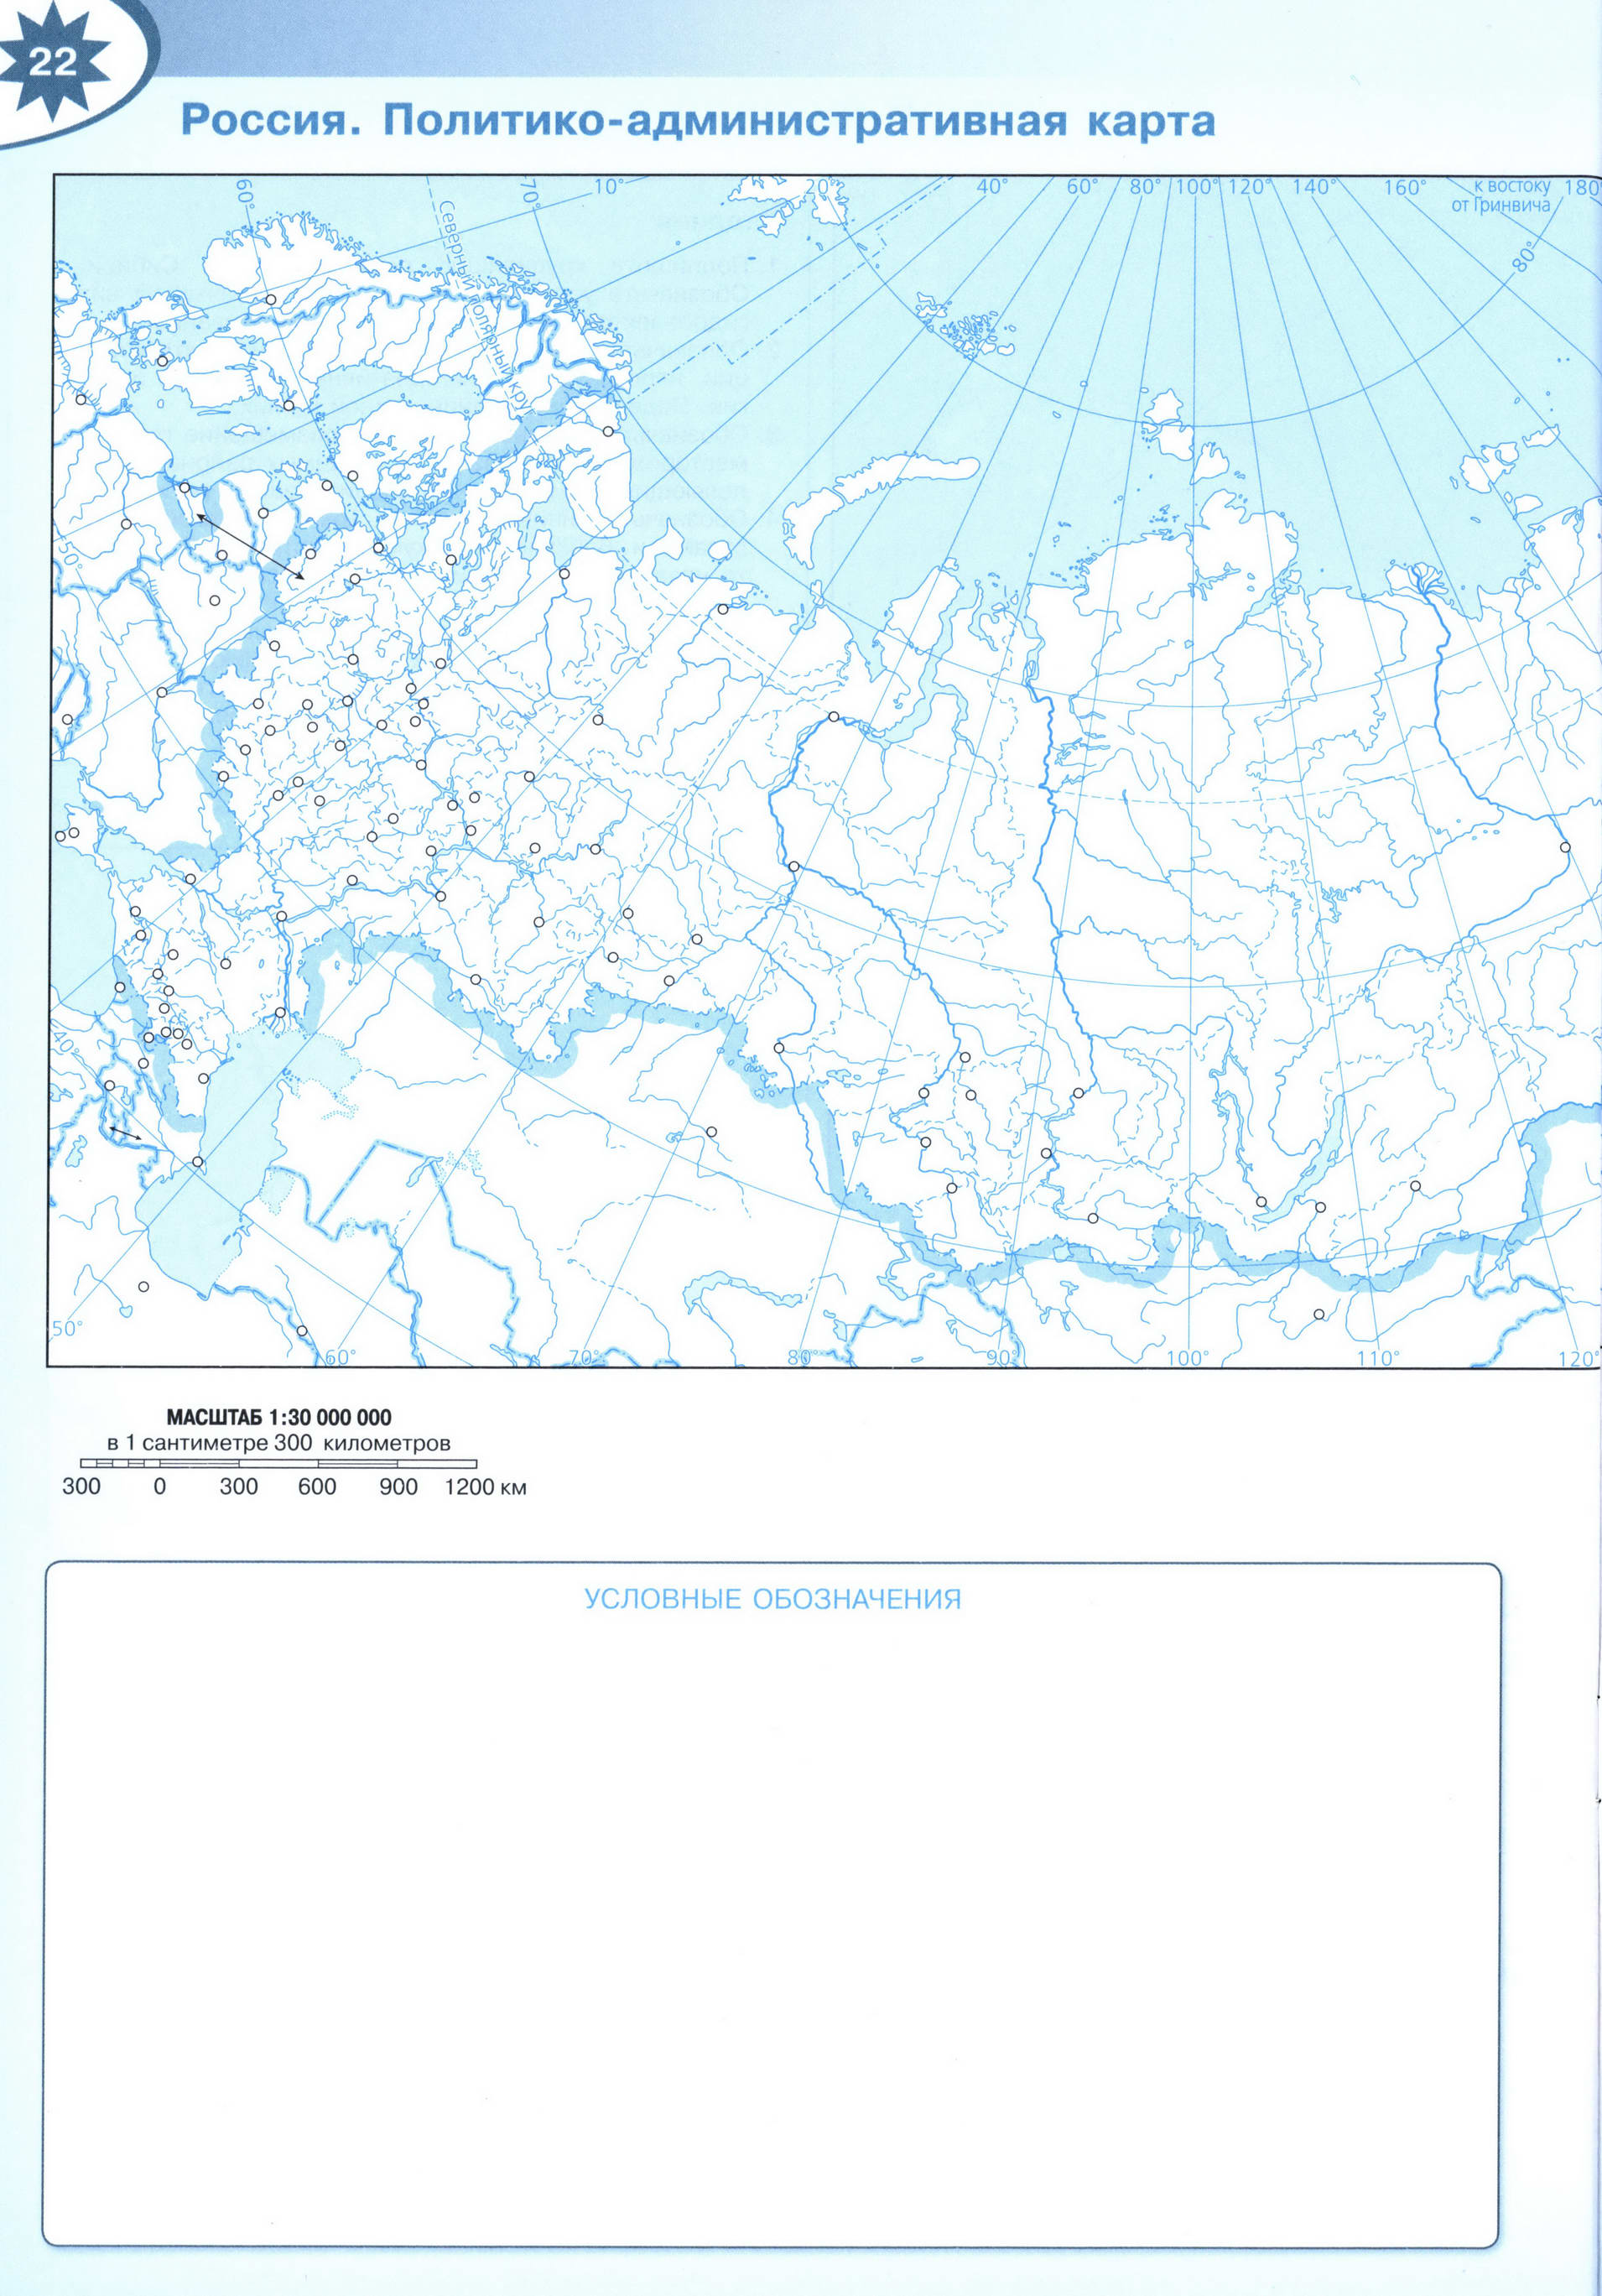 Россия политико-административная карта контурная 9 класс распечатать -Решебник